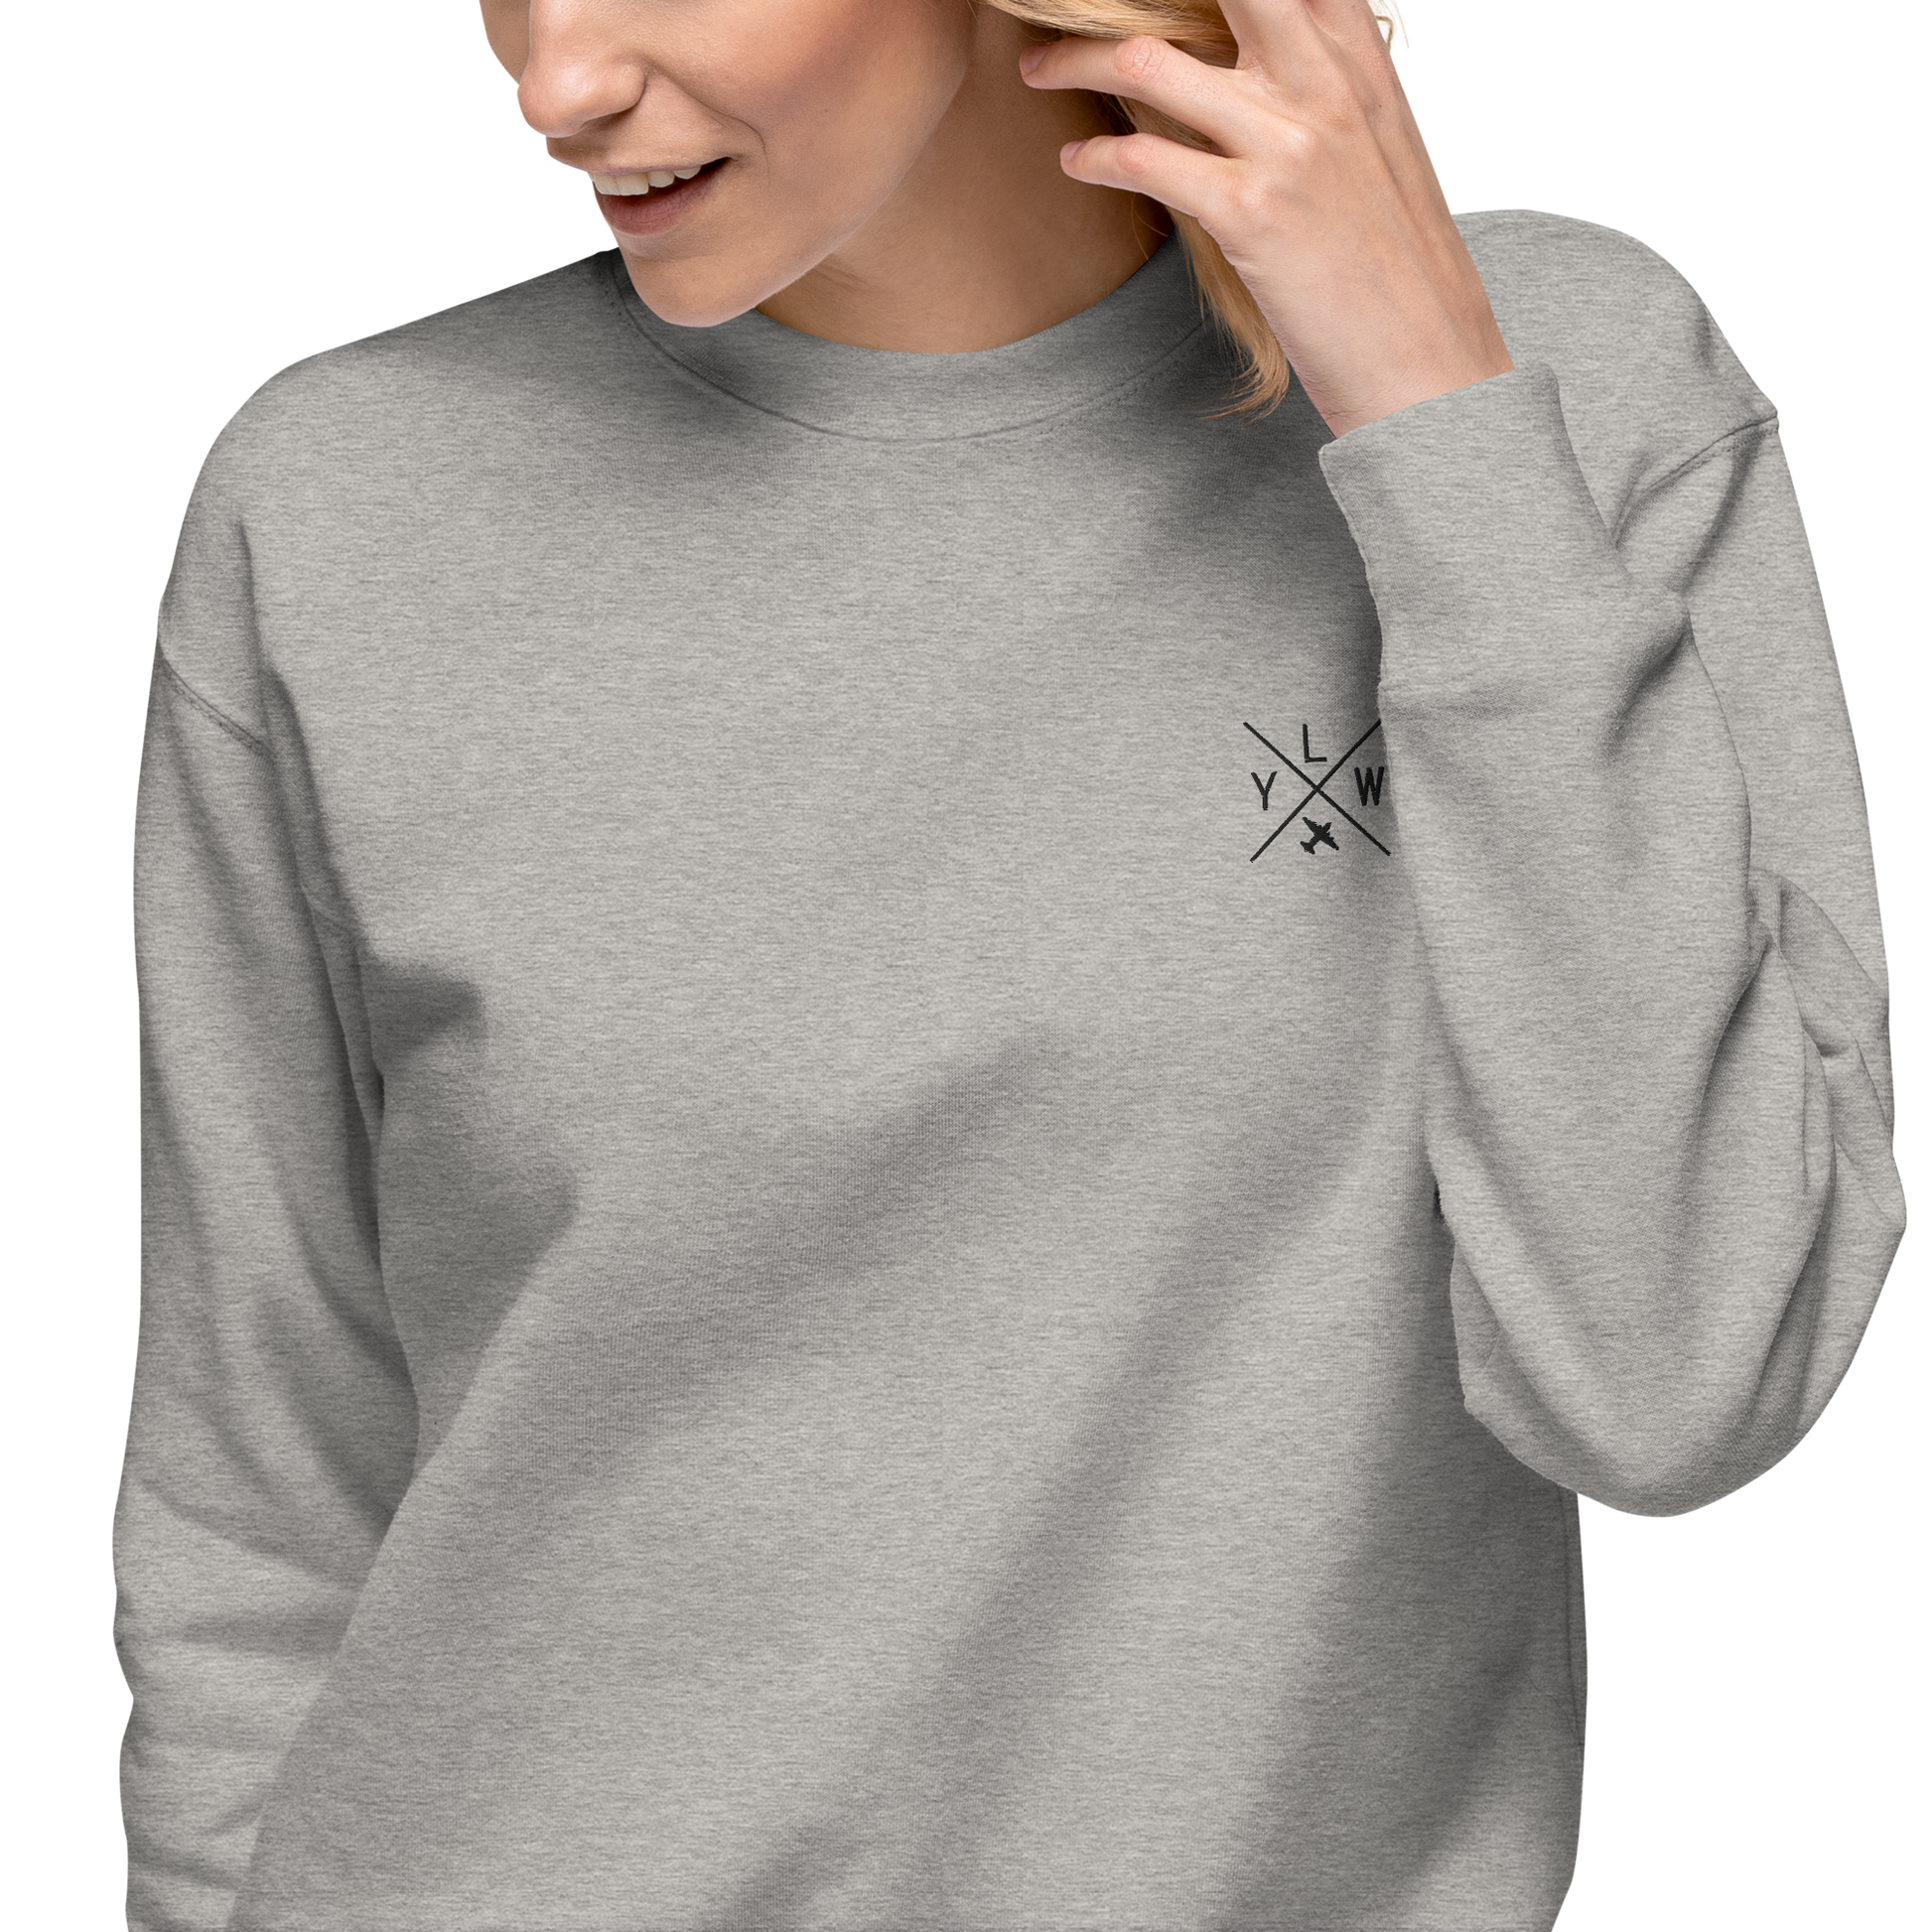 Crossed-X Premium Sweatshirt • YLW Kelowna • YHM Designs - Image 03